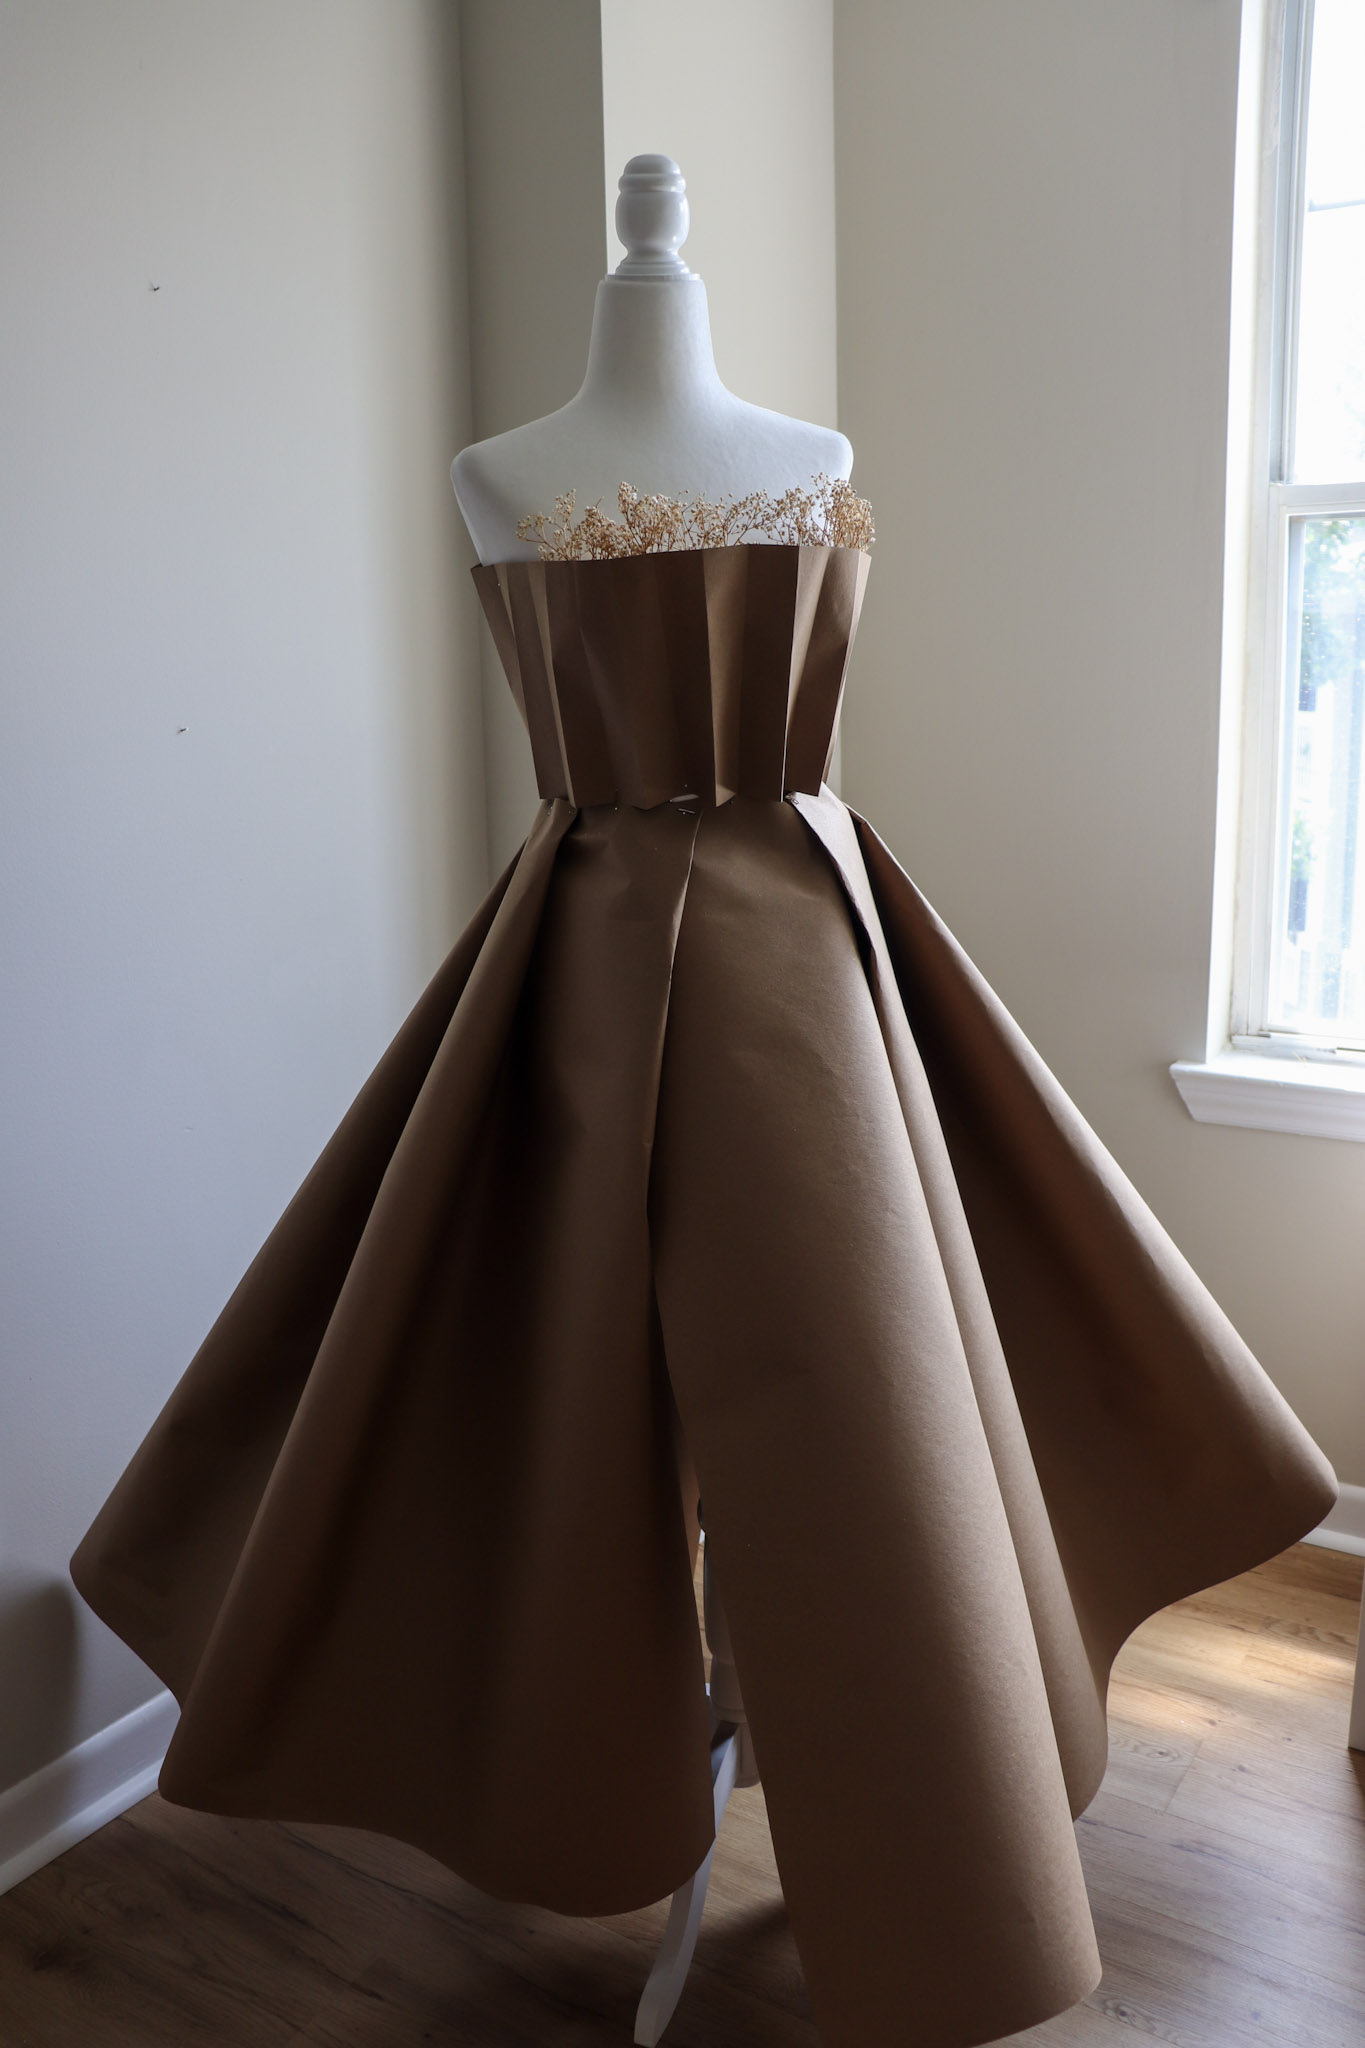 How to Make a Dress Out of Paper - Alexandria Cruz